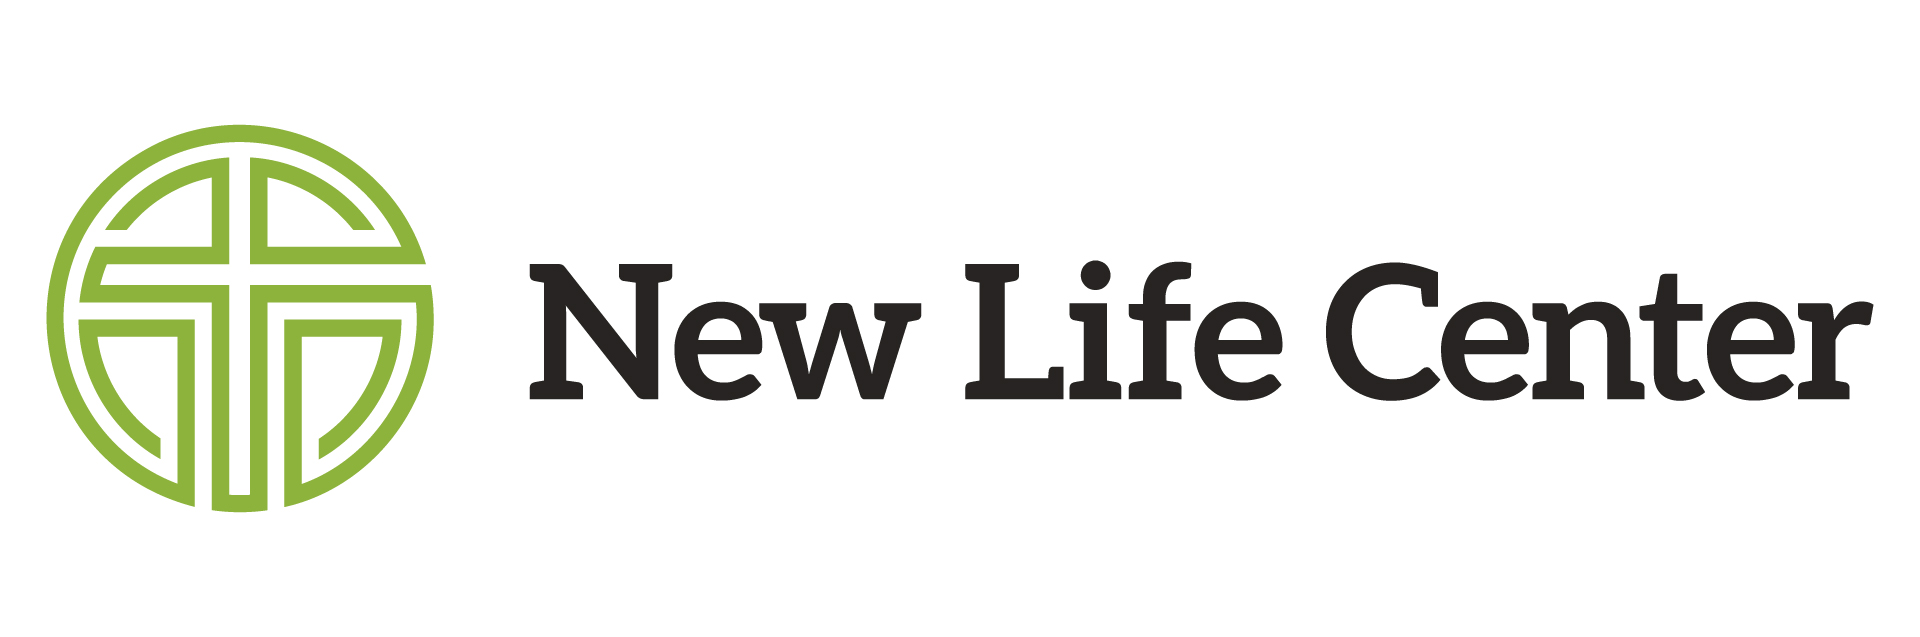 New Life Center web.jpg